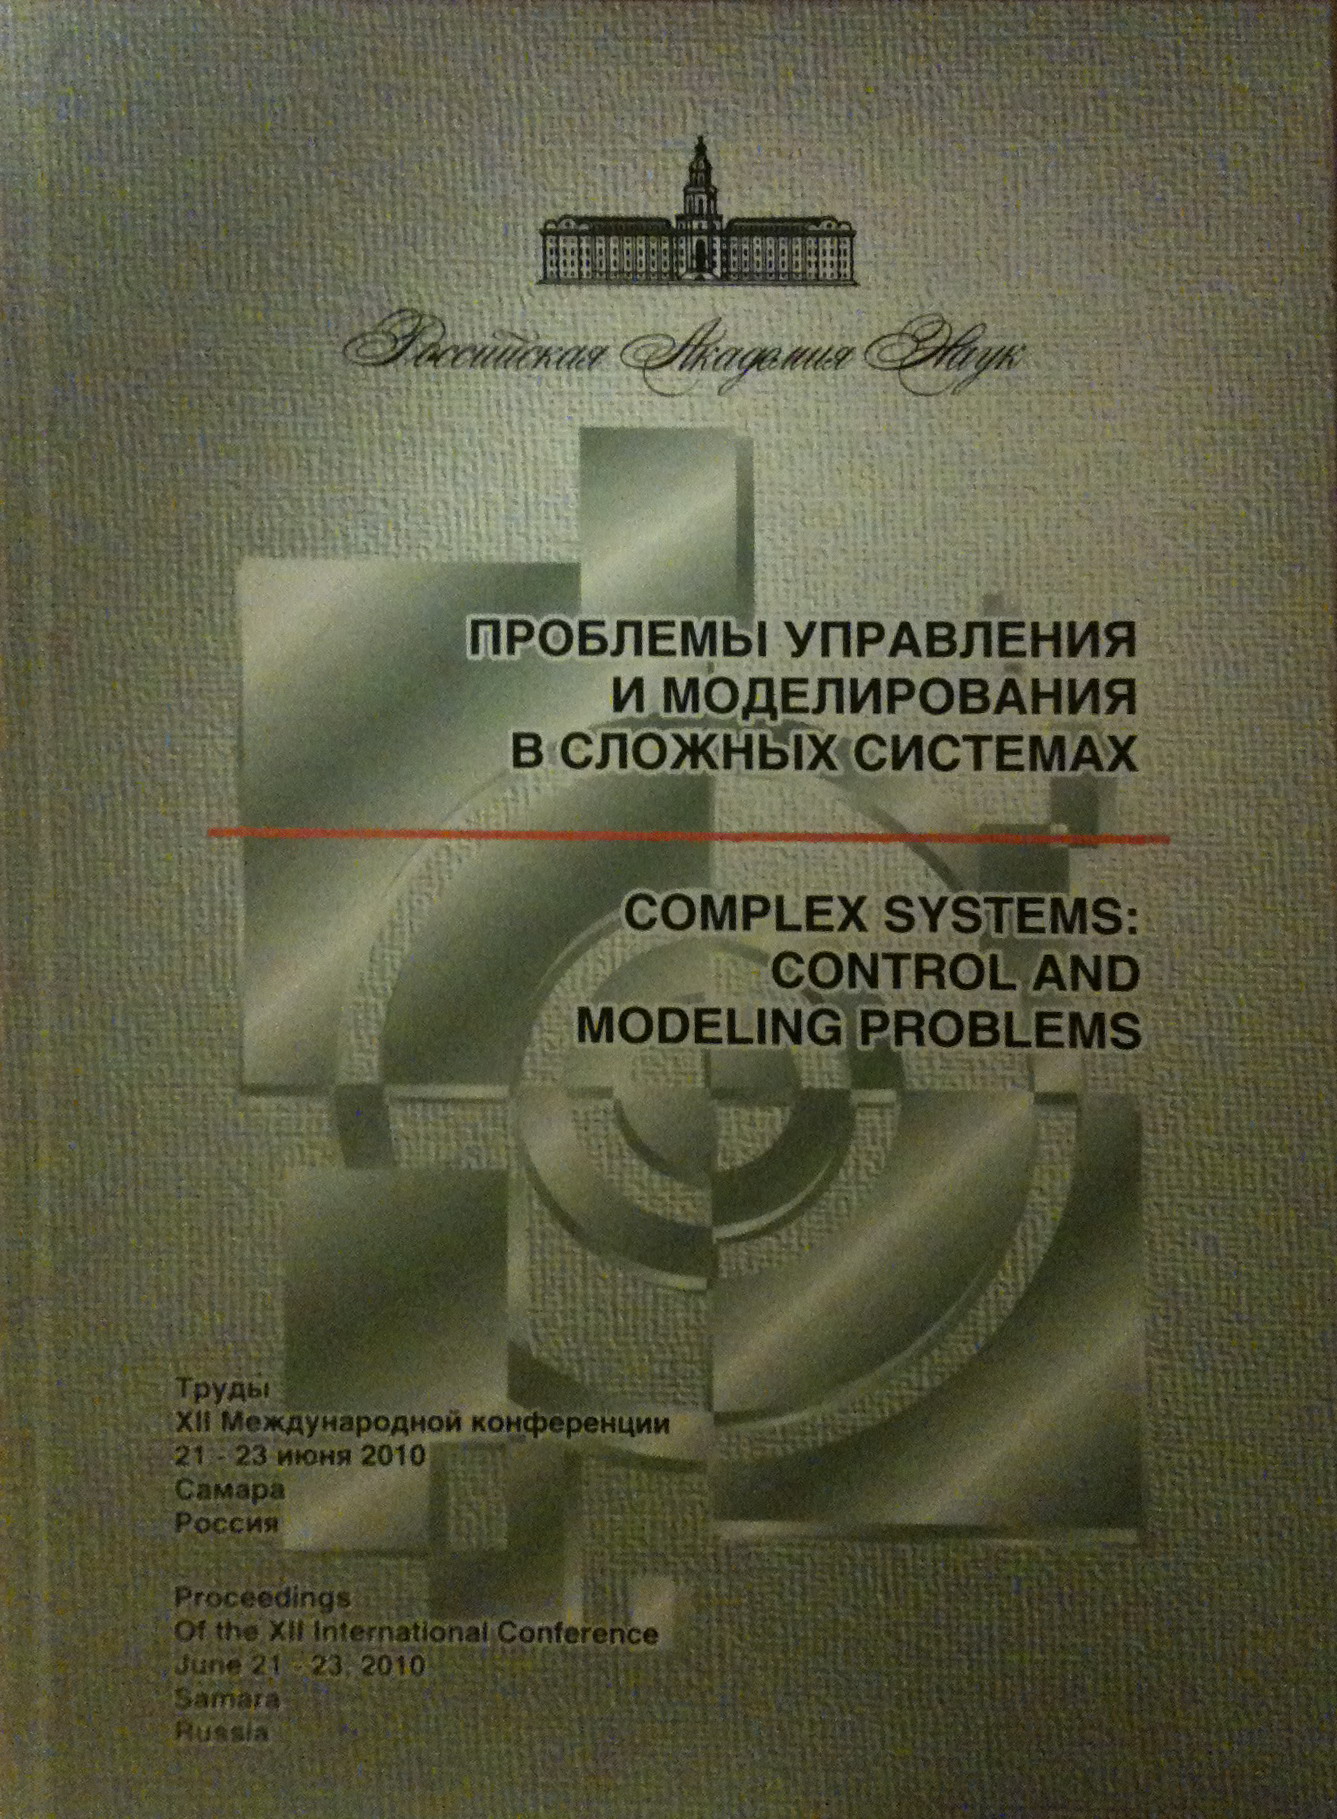 Проблемы управления и моделирования в сложных системах. Труды XII Международной конференции (21-23 июня 2010, Самара, Россия)